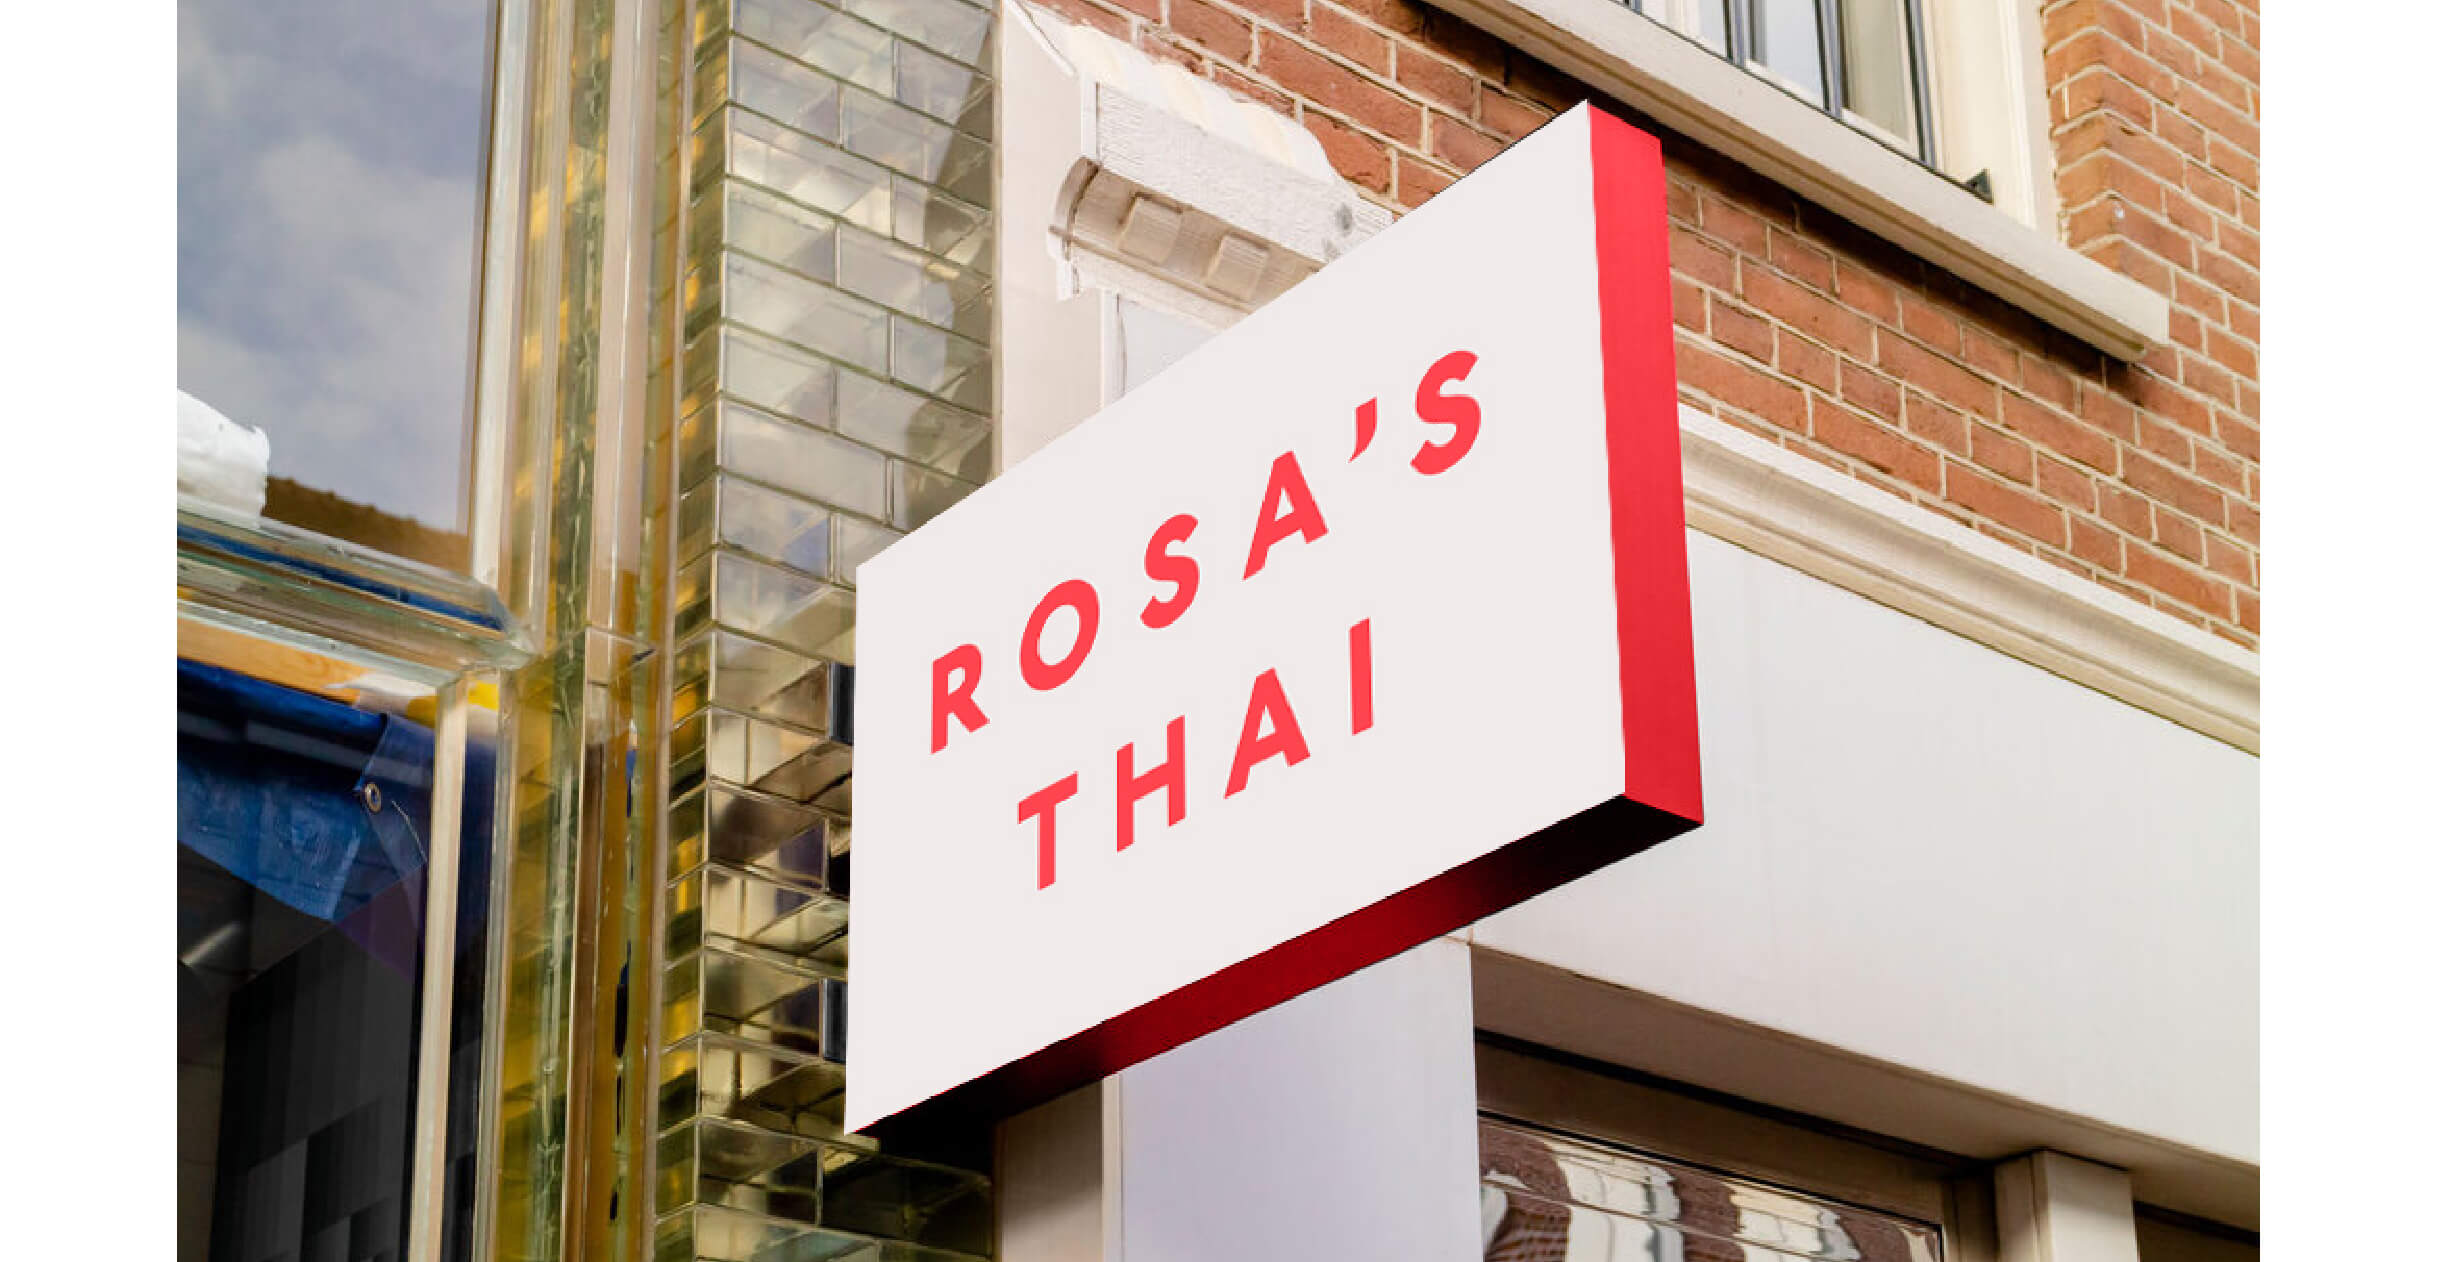 Rosa's Thai signage